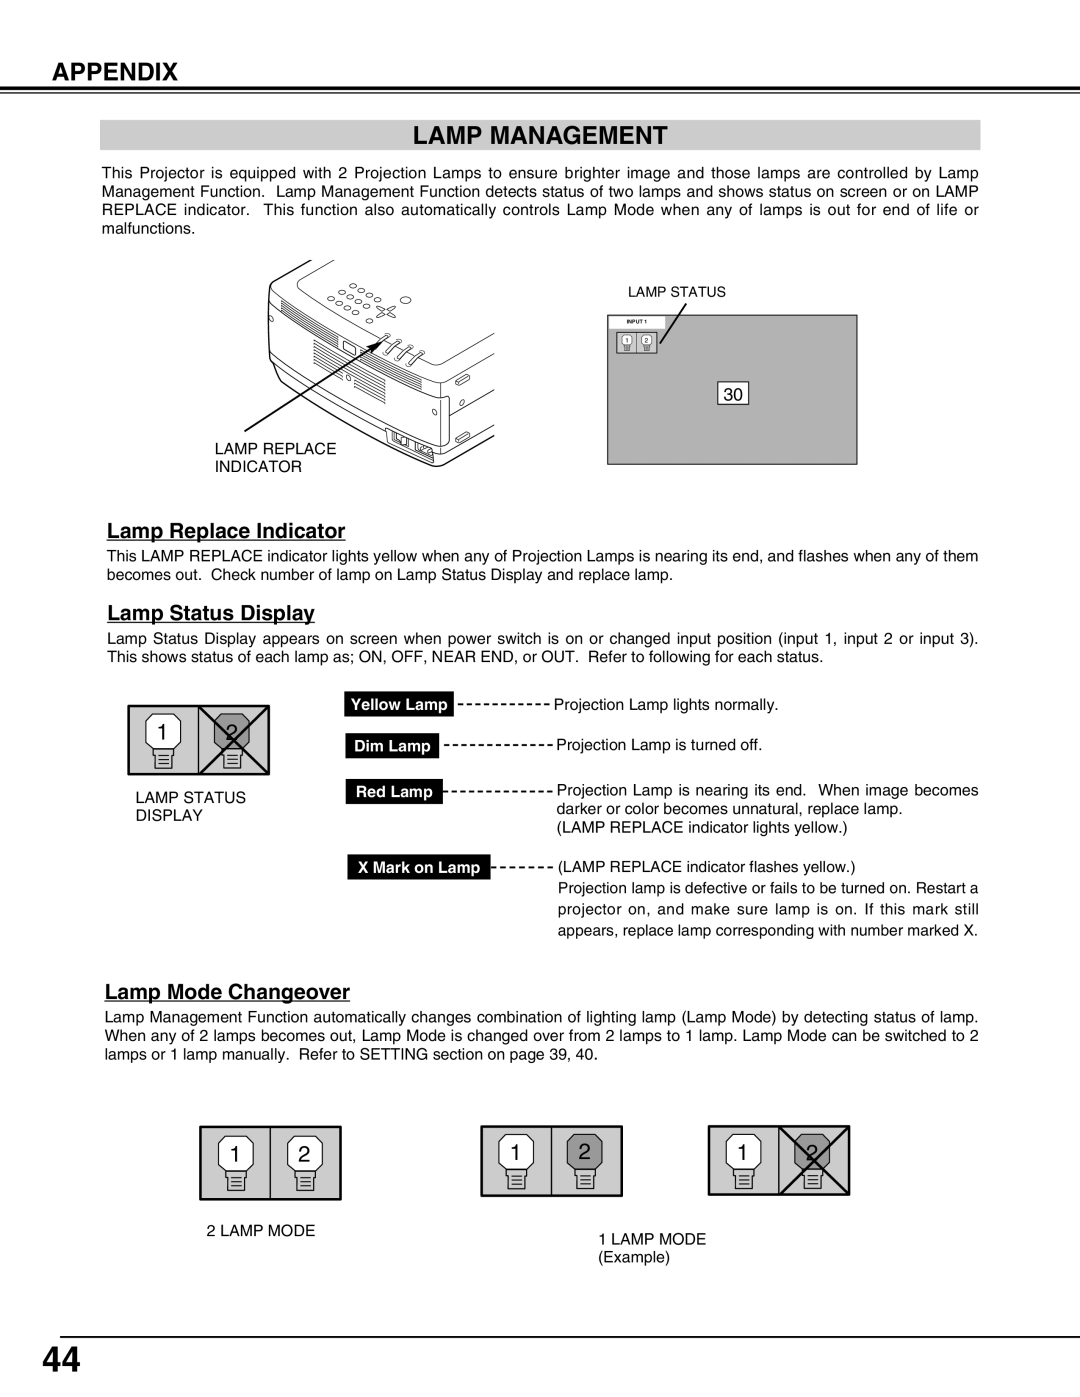 Christie Digital Systems 38-VIV302-01 user manual Appendix Lamp Management, Lamp Replace Indicator, Lamp Status Display 